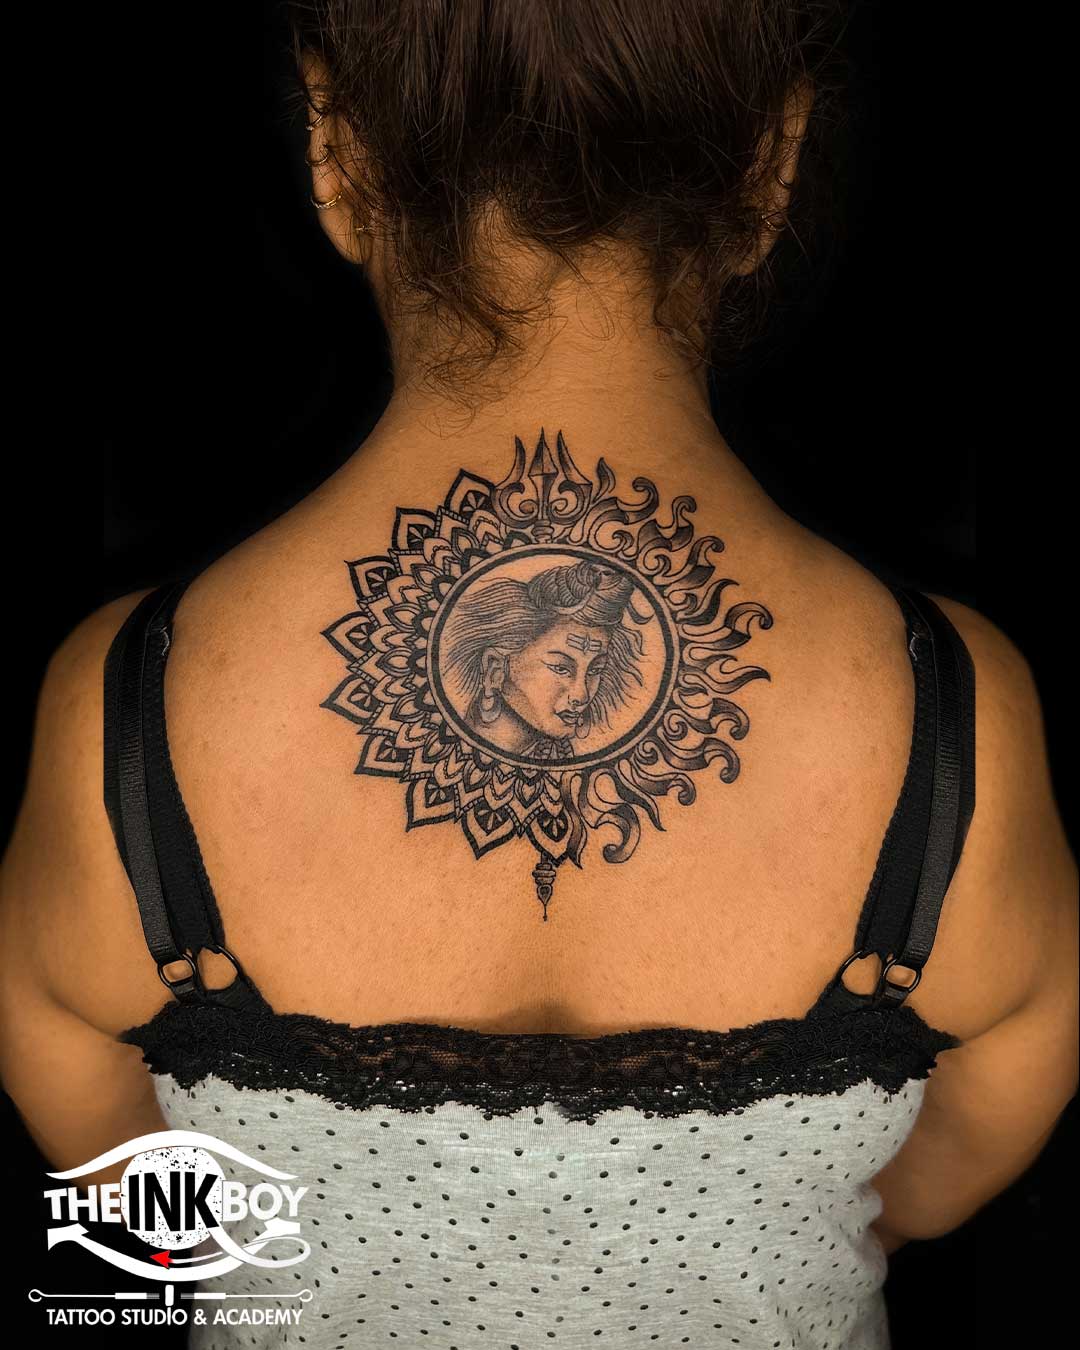 Neck tattoo | Neck tattoo, Tattoos, Hand tattoos